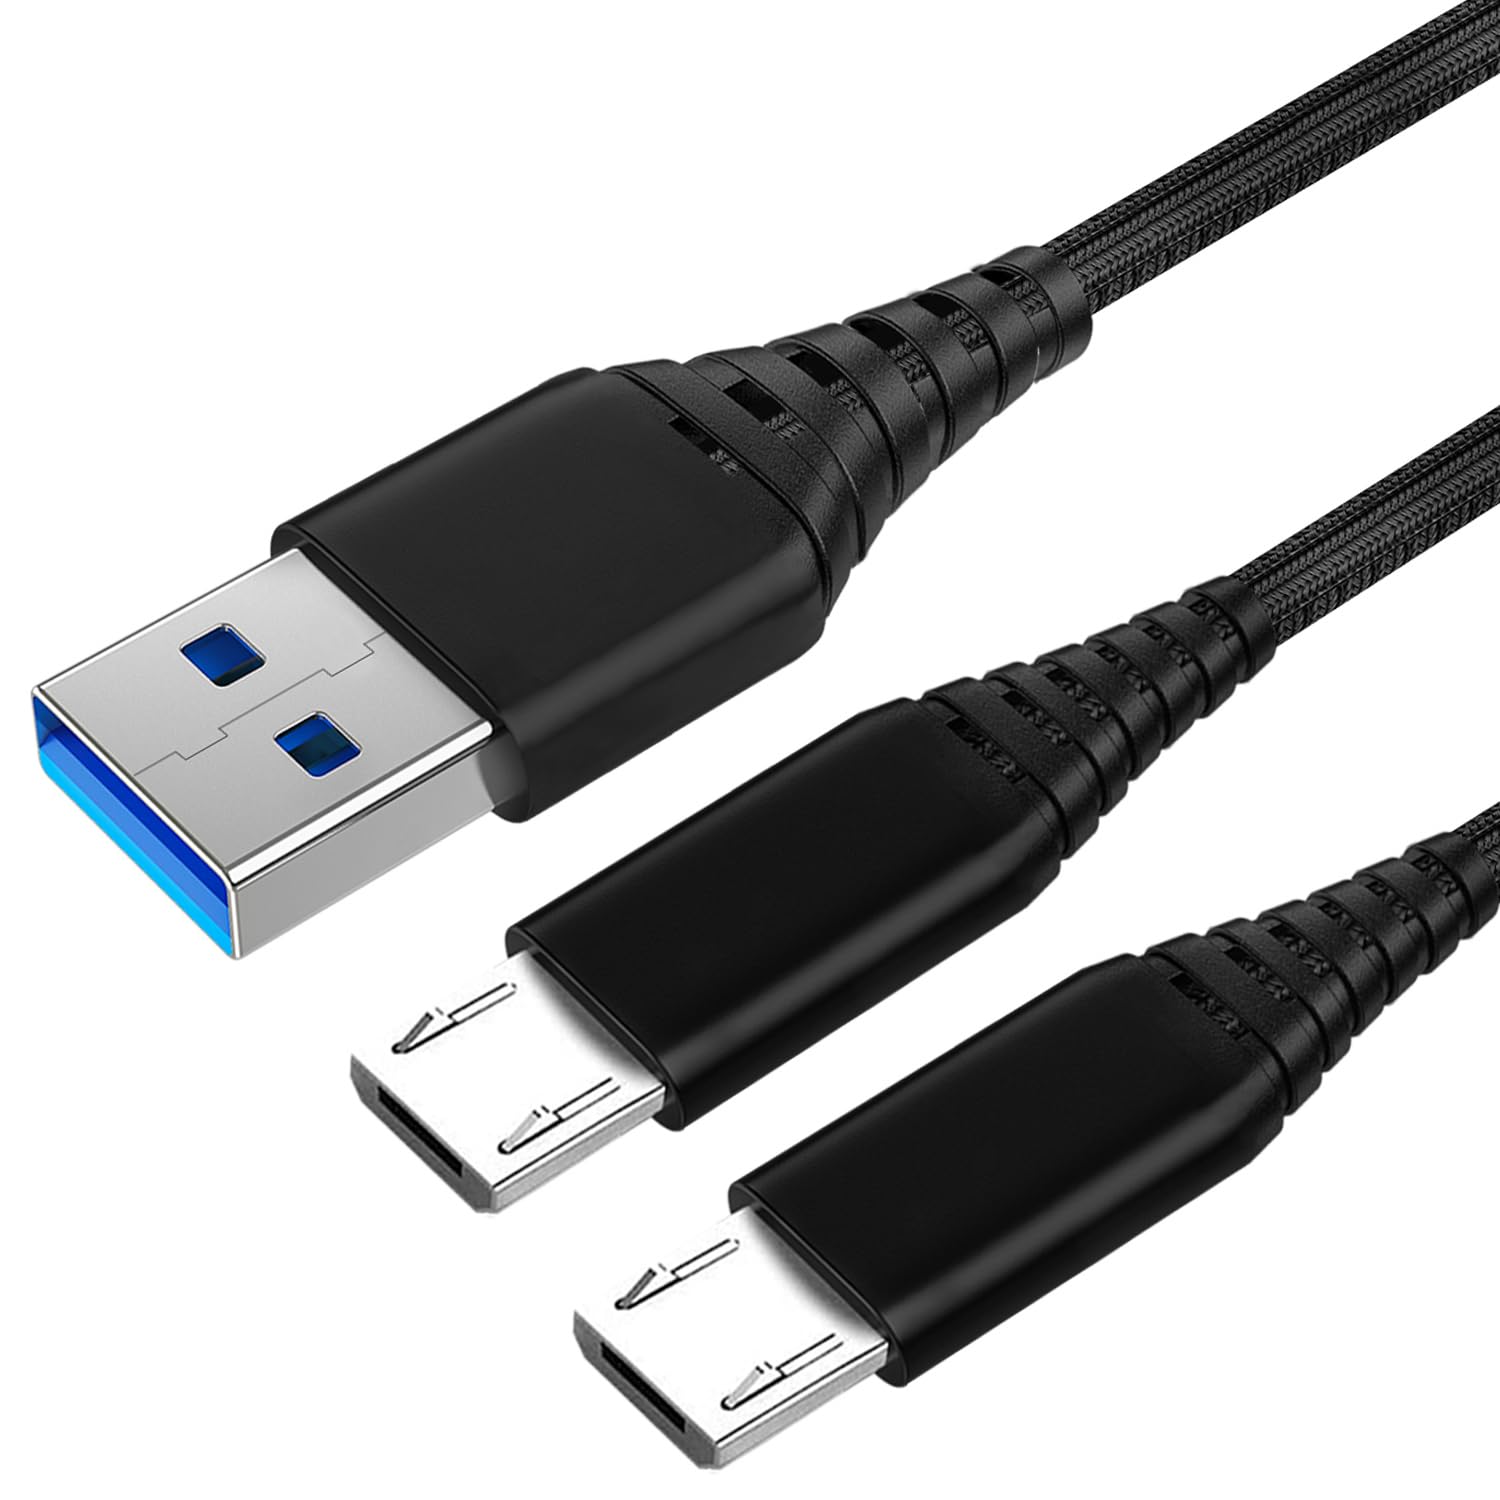 Stellen Sie sicher, dass das USB-Kabel ordnungsgemäß mit dem Controller und der Konsole verbunden ist.
Überprüfen Sie den Zustand des USB-Kabels auf Beschädigungen.